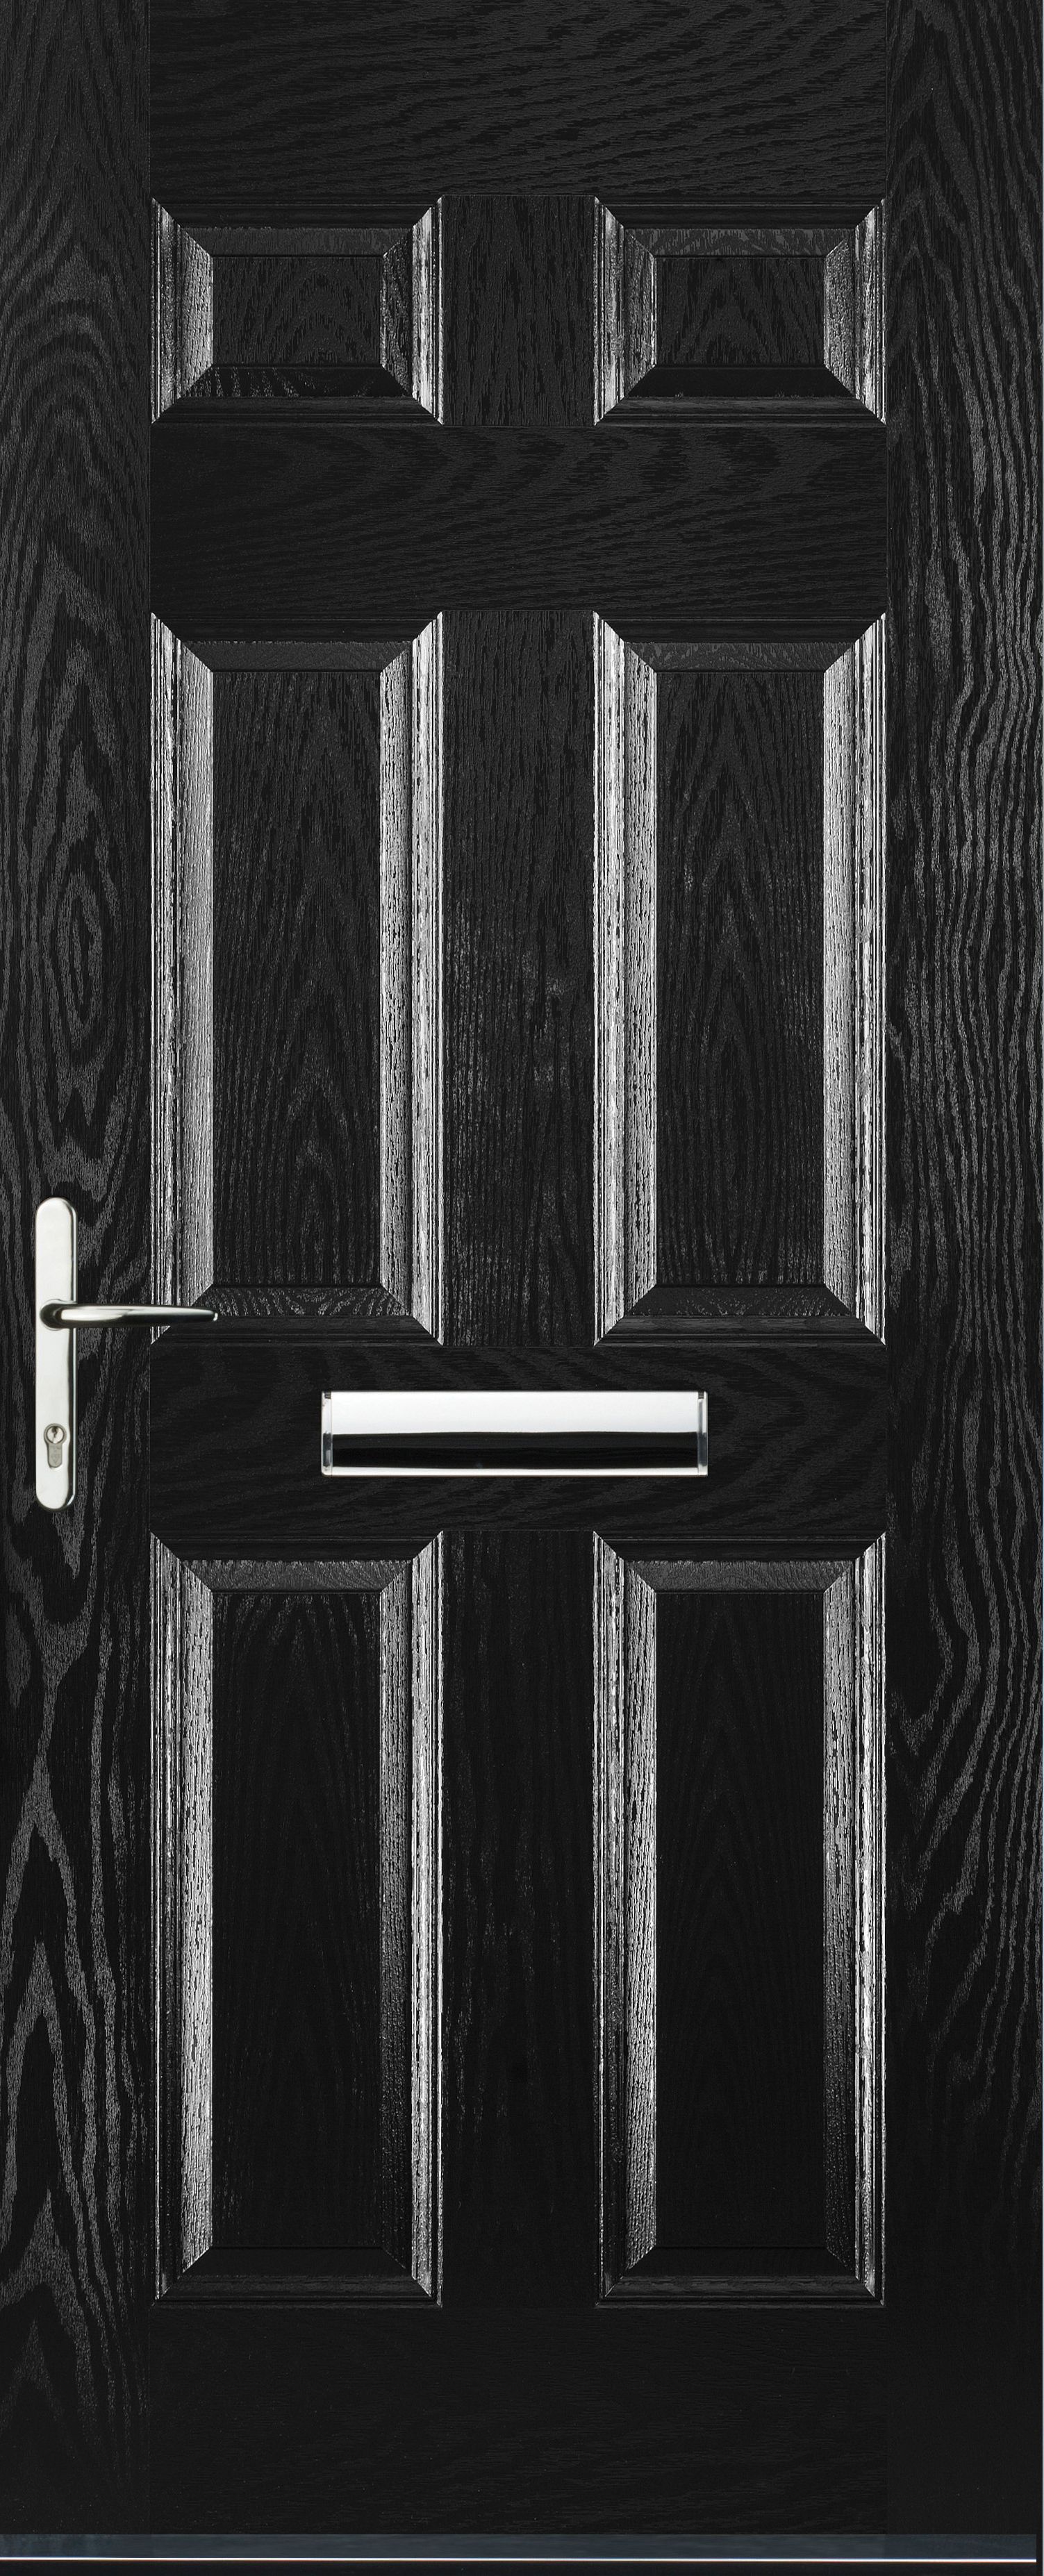 Image of Euramax 6 Panel Right Hand Black Composite Door - 840 x 2100mm